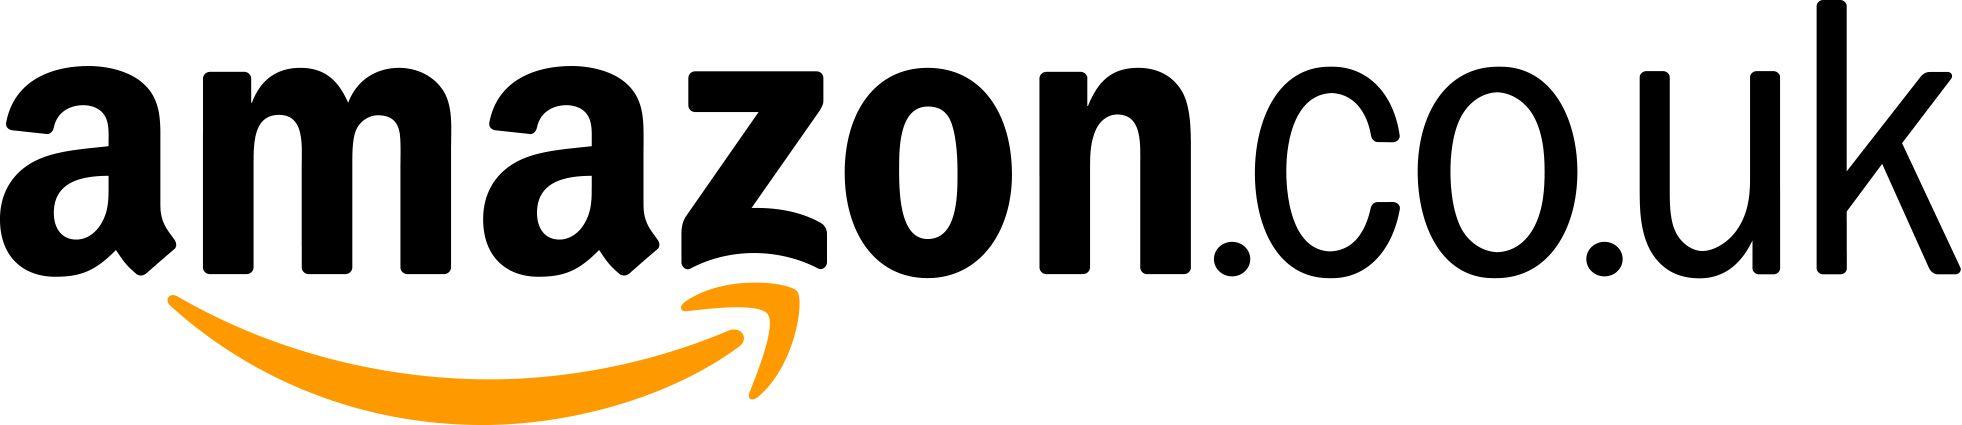 Amazon Co UK Logo - Images